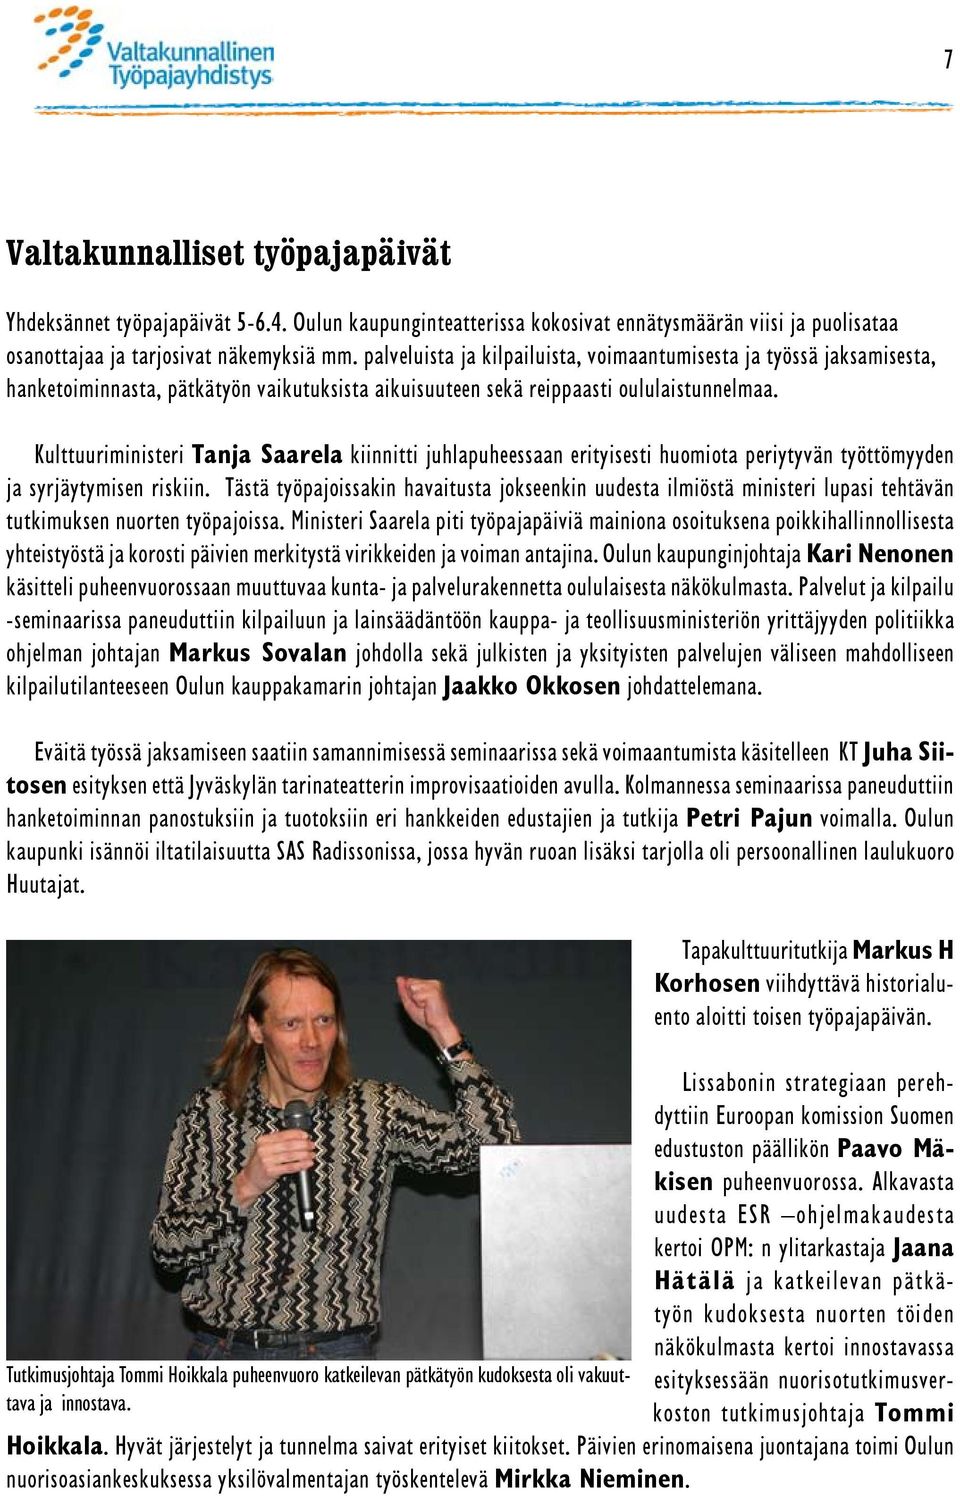 Kulttuuriministeri Tanja Saarela kiinnitti juhlapuheessaan erityisesti huomiota periytyvän työttömyyden ja syrjäytymisen riskiin.